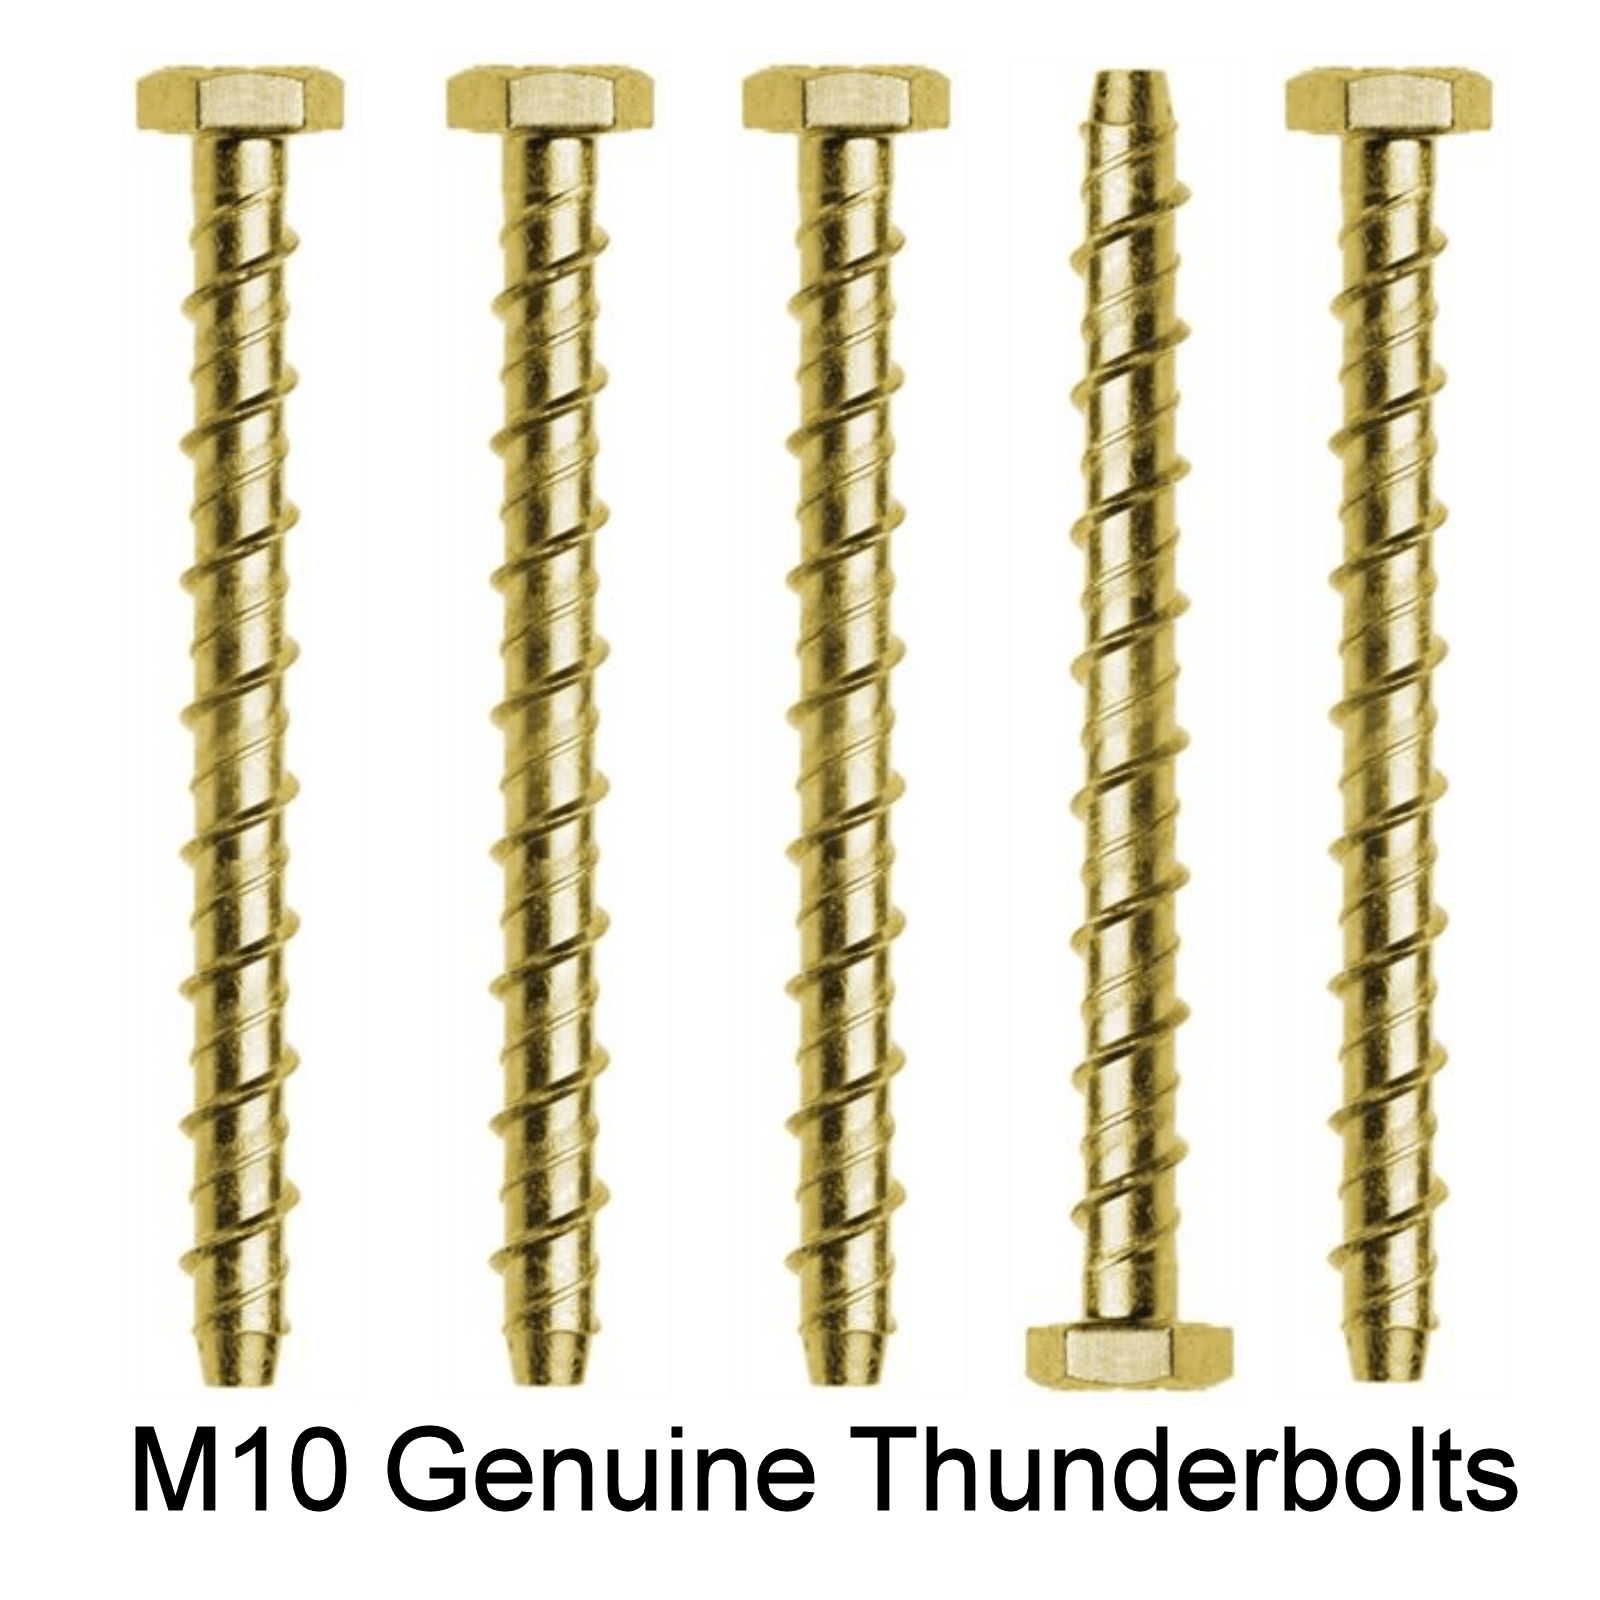 M10 Genuine Thunderbolt Masonry Concrete Anchor Screw All Lengths